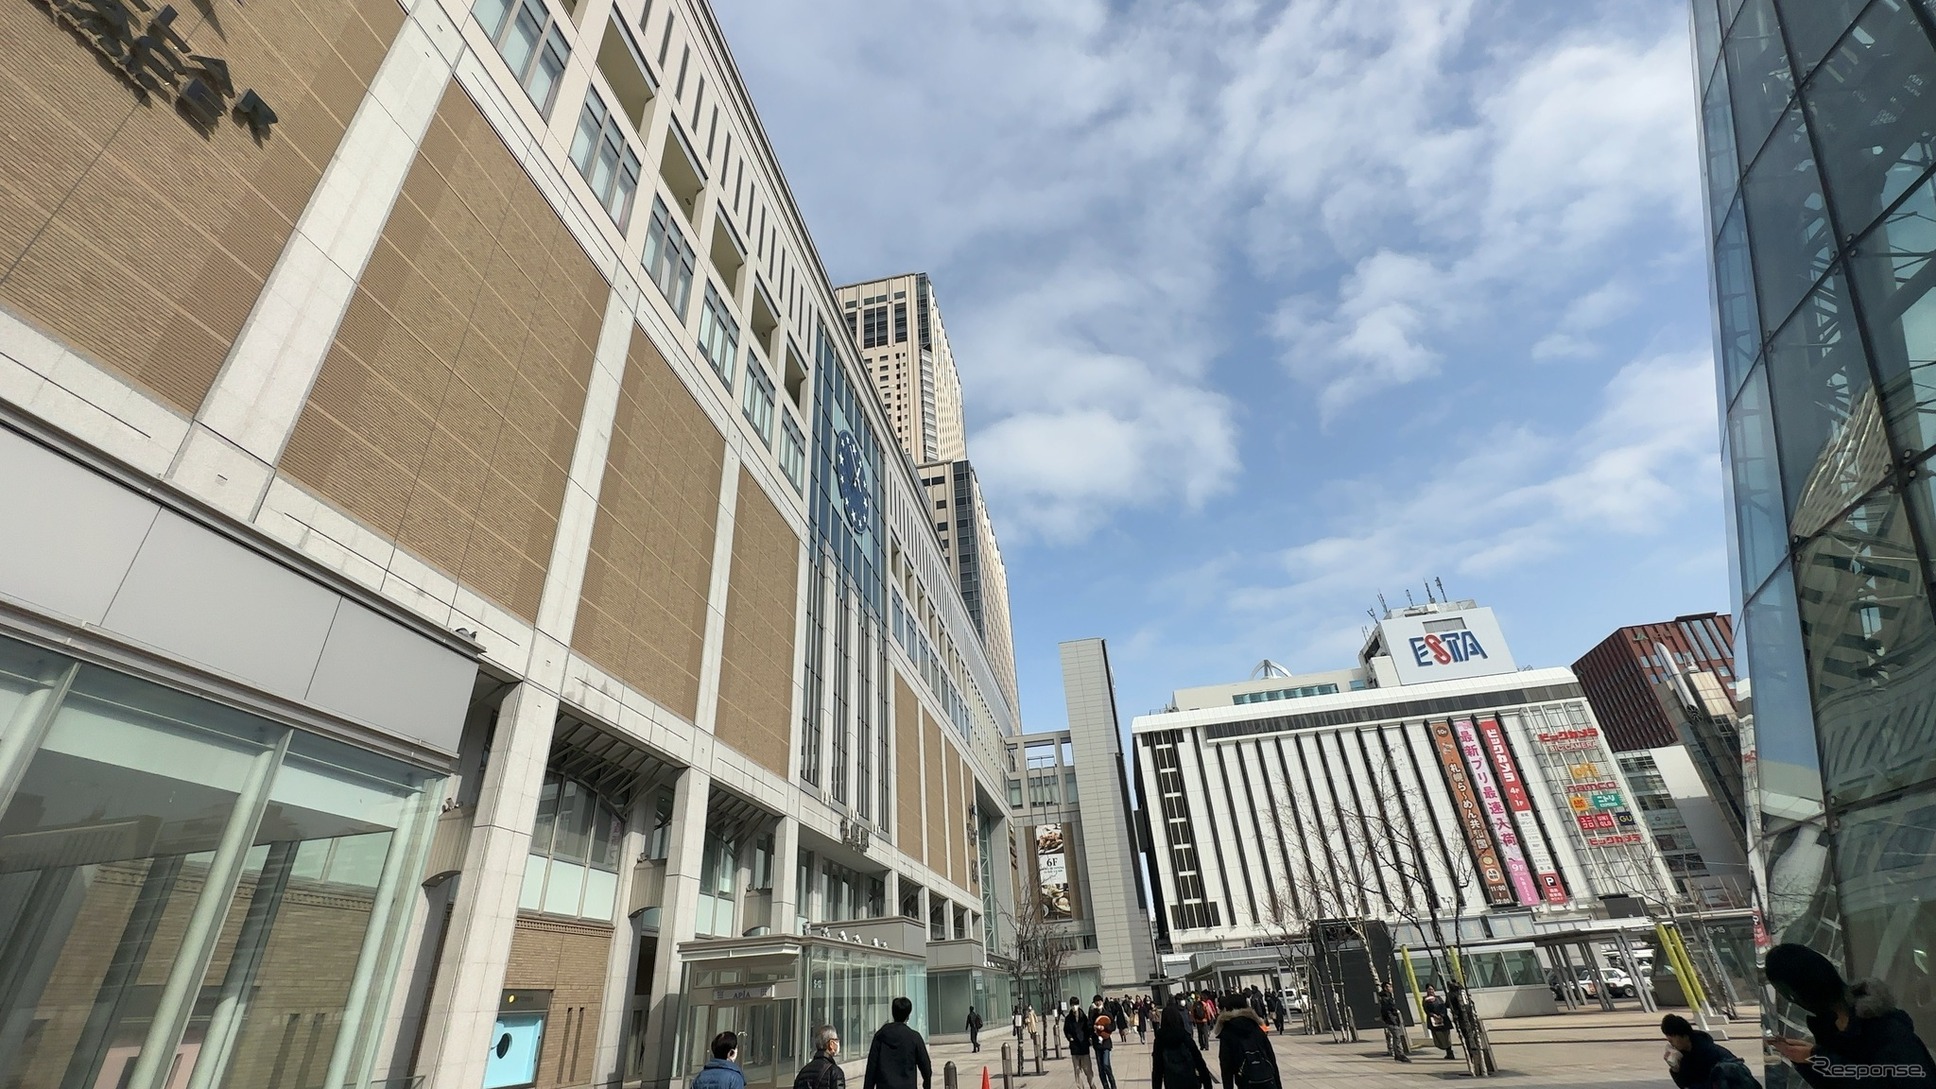 札幌駅南口。奥の白い建物が1978年に開業した「札幌エスタ」。階下のバスターミナルも同時期に開業していた。2023年3月11日。